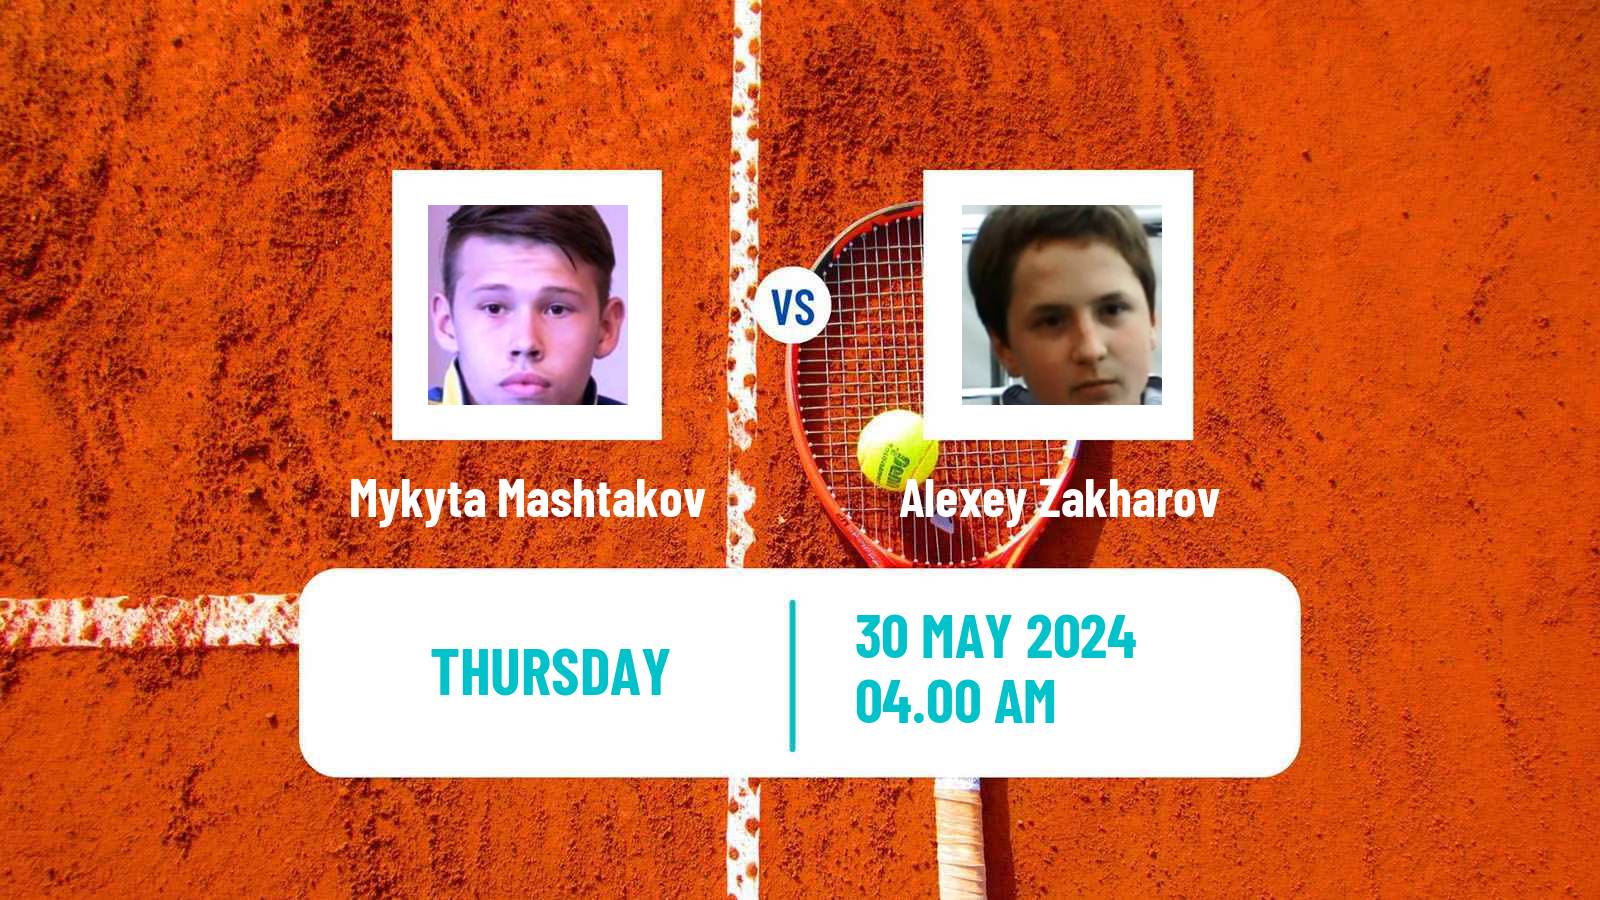 Tennis ITF M15 Bol 2 Men Mykyta Mashtakov - Alexey Zakharov